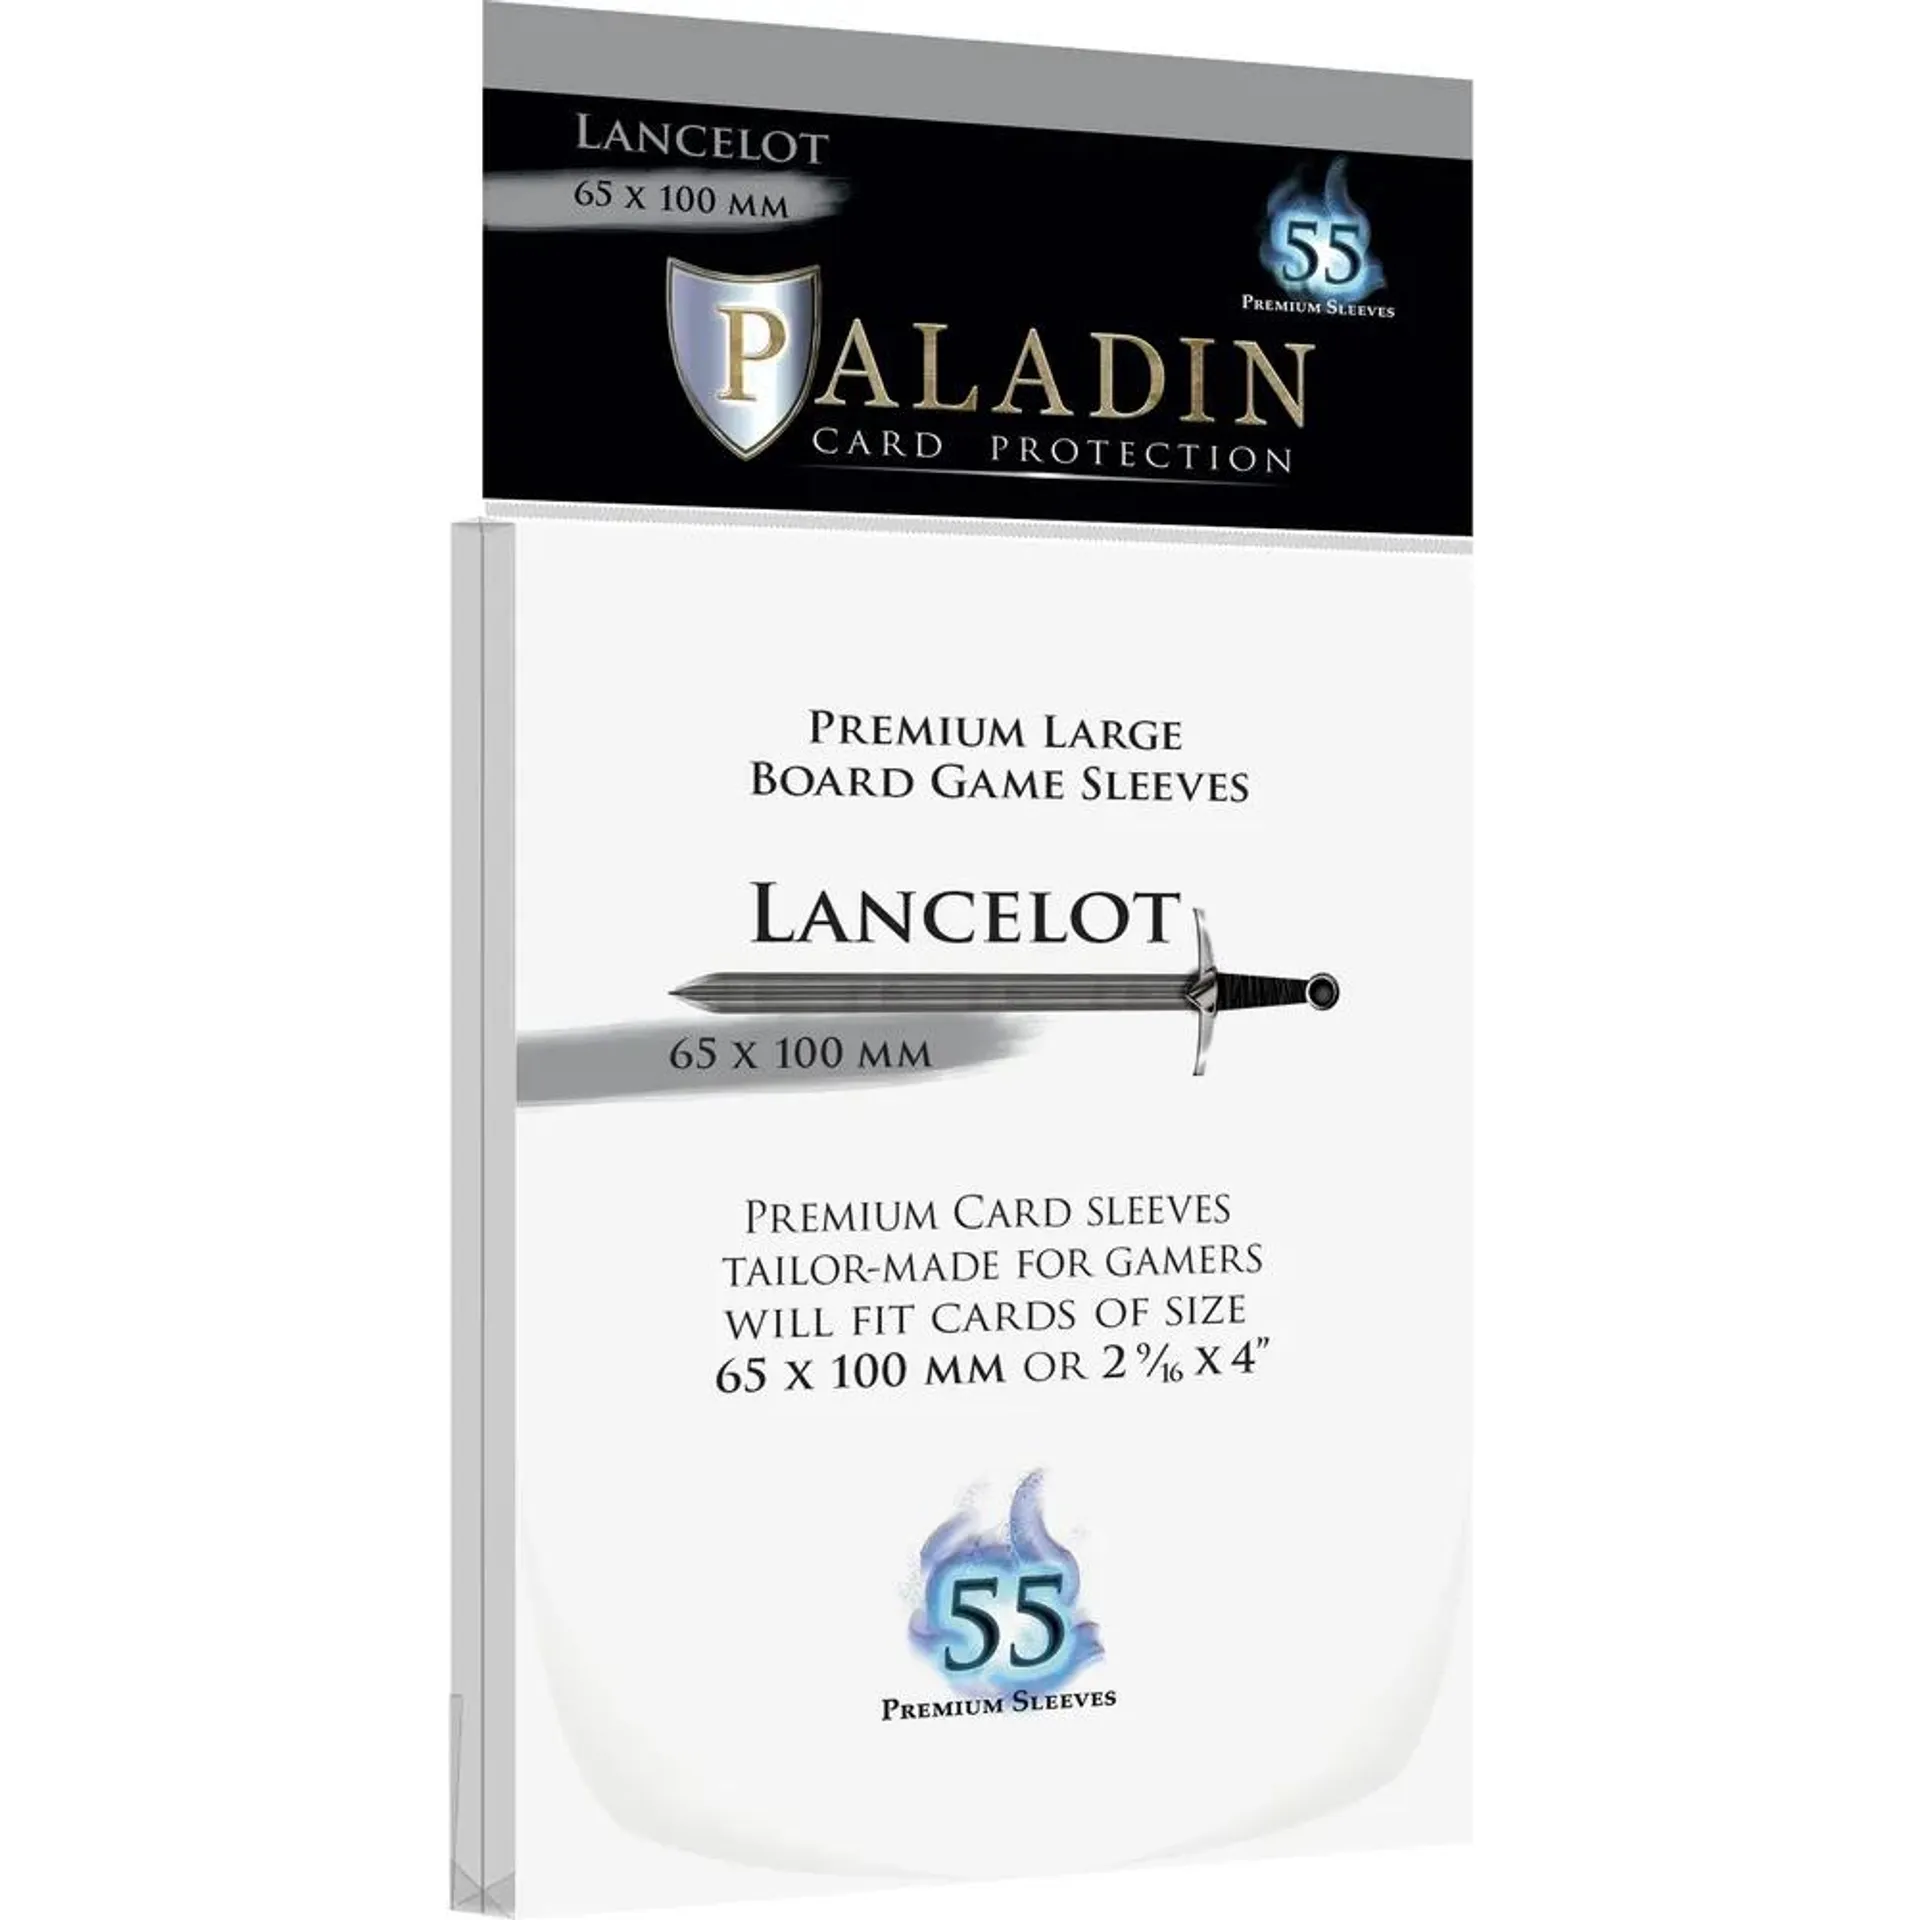 Kártyavédő - Paladin 65*100 mm (Lancelot) Premium (55 db-os)